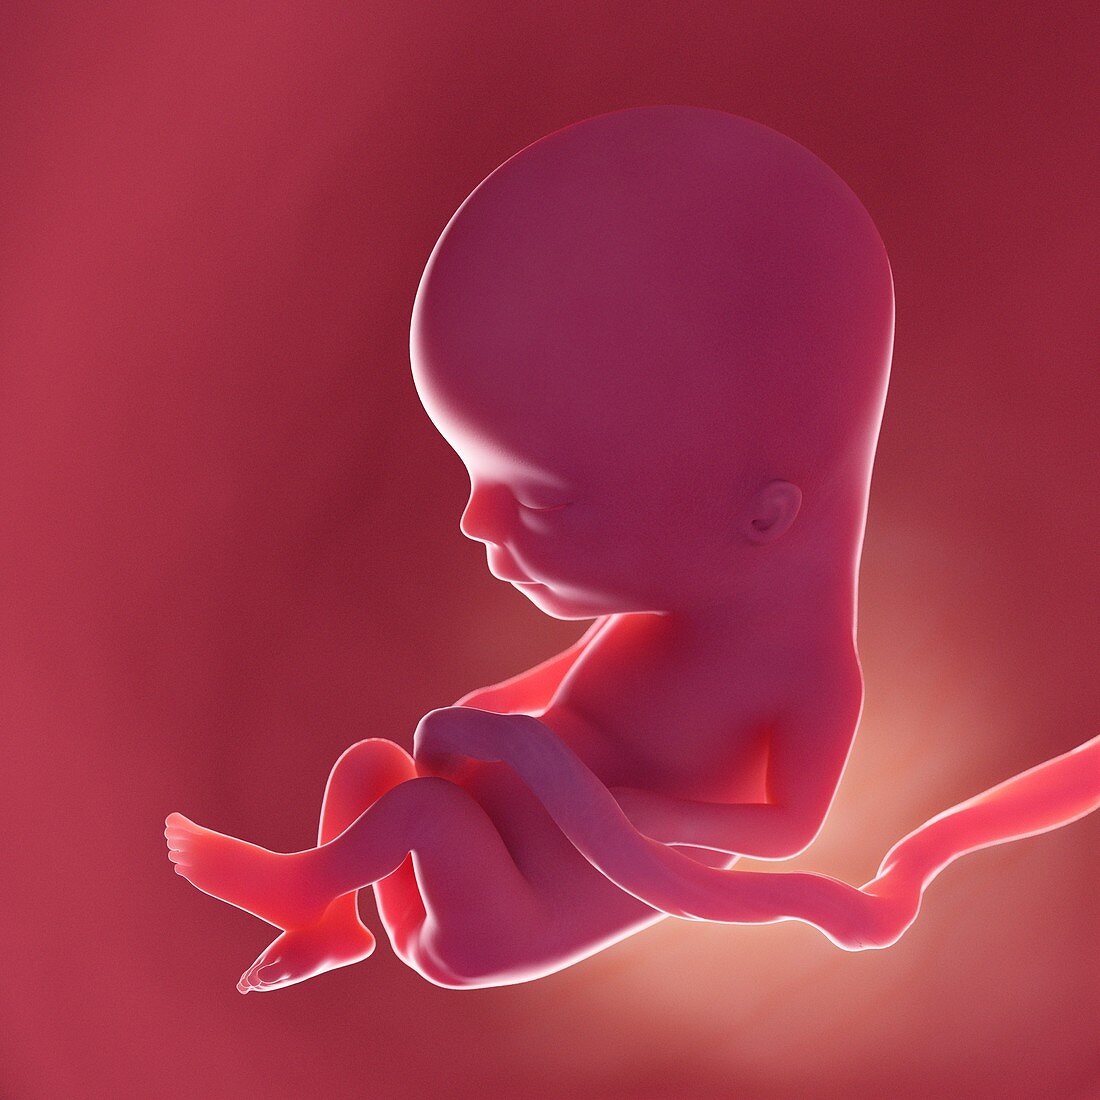 Fetus at week 13, illustration